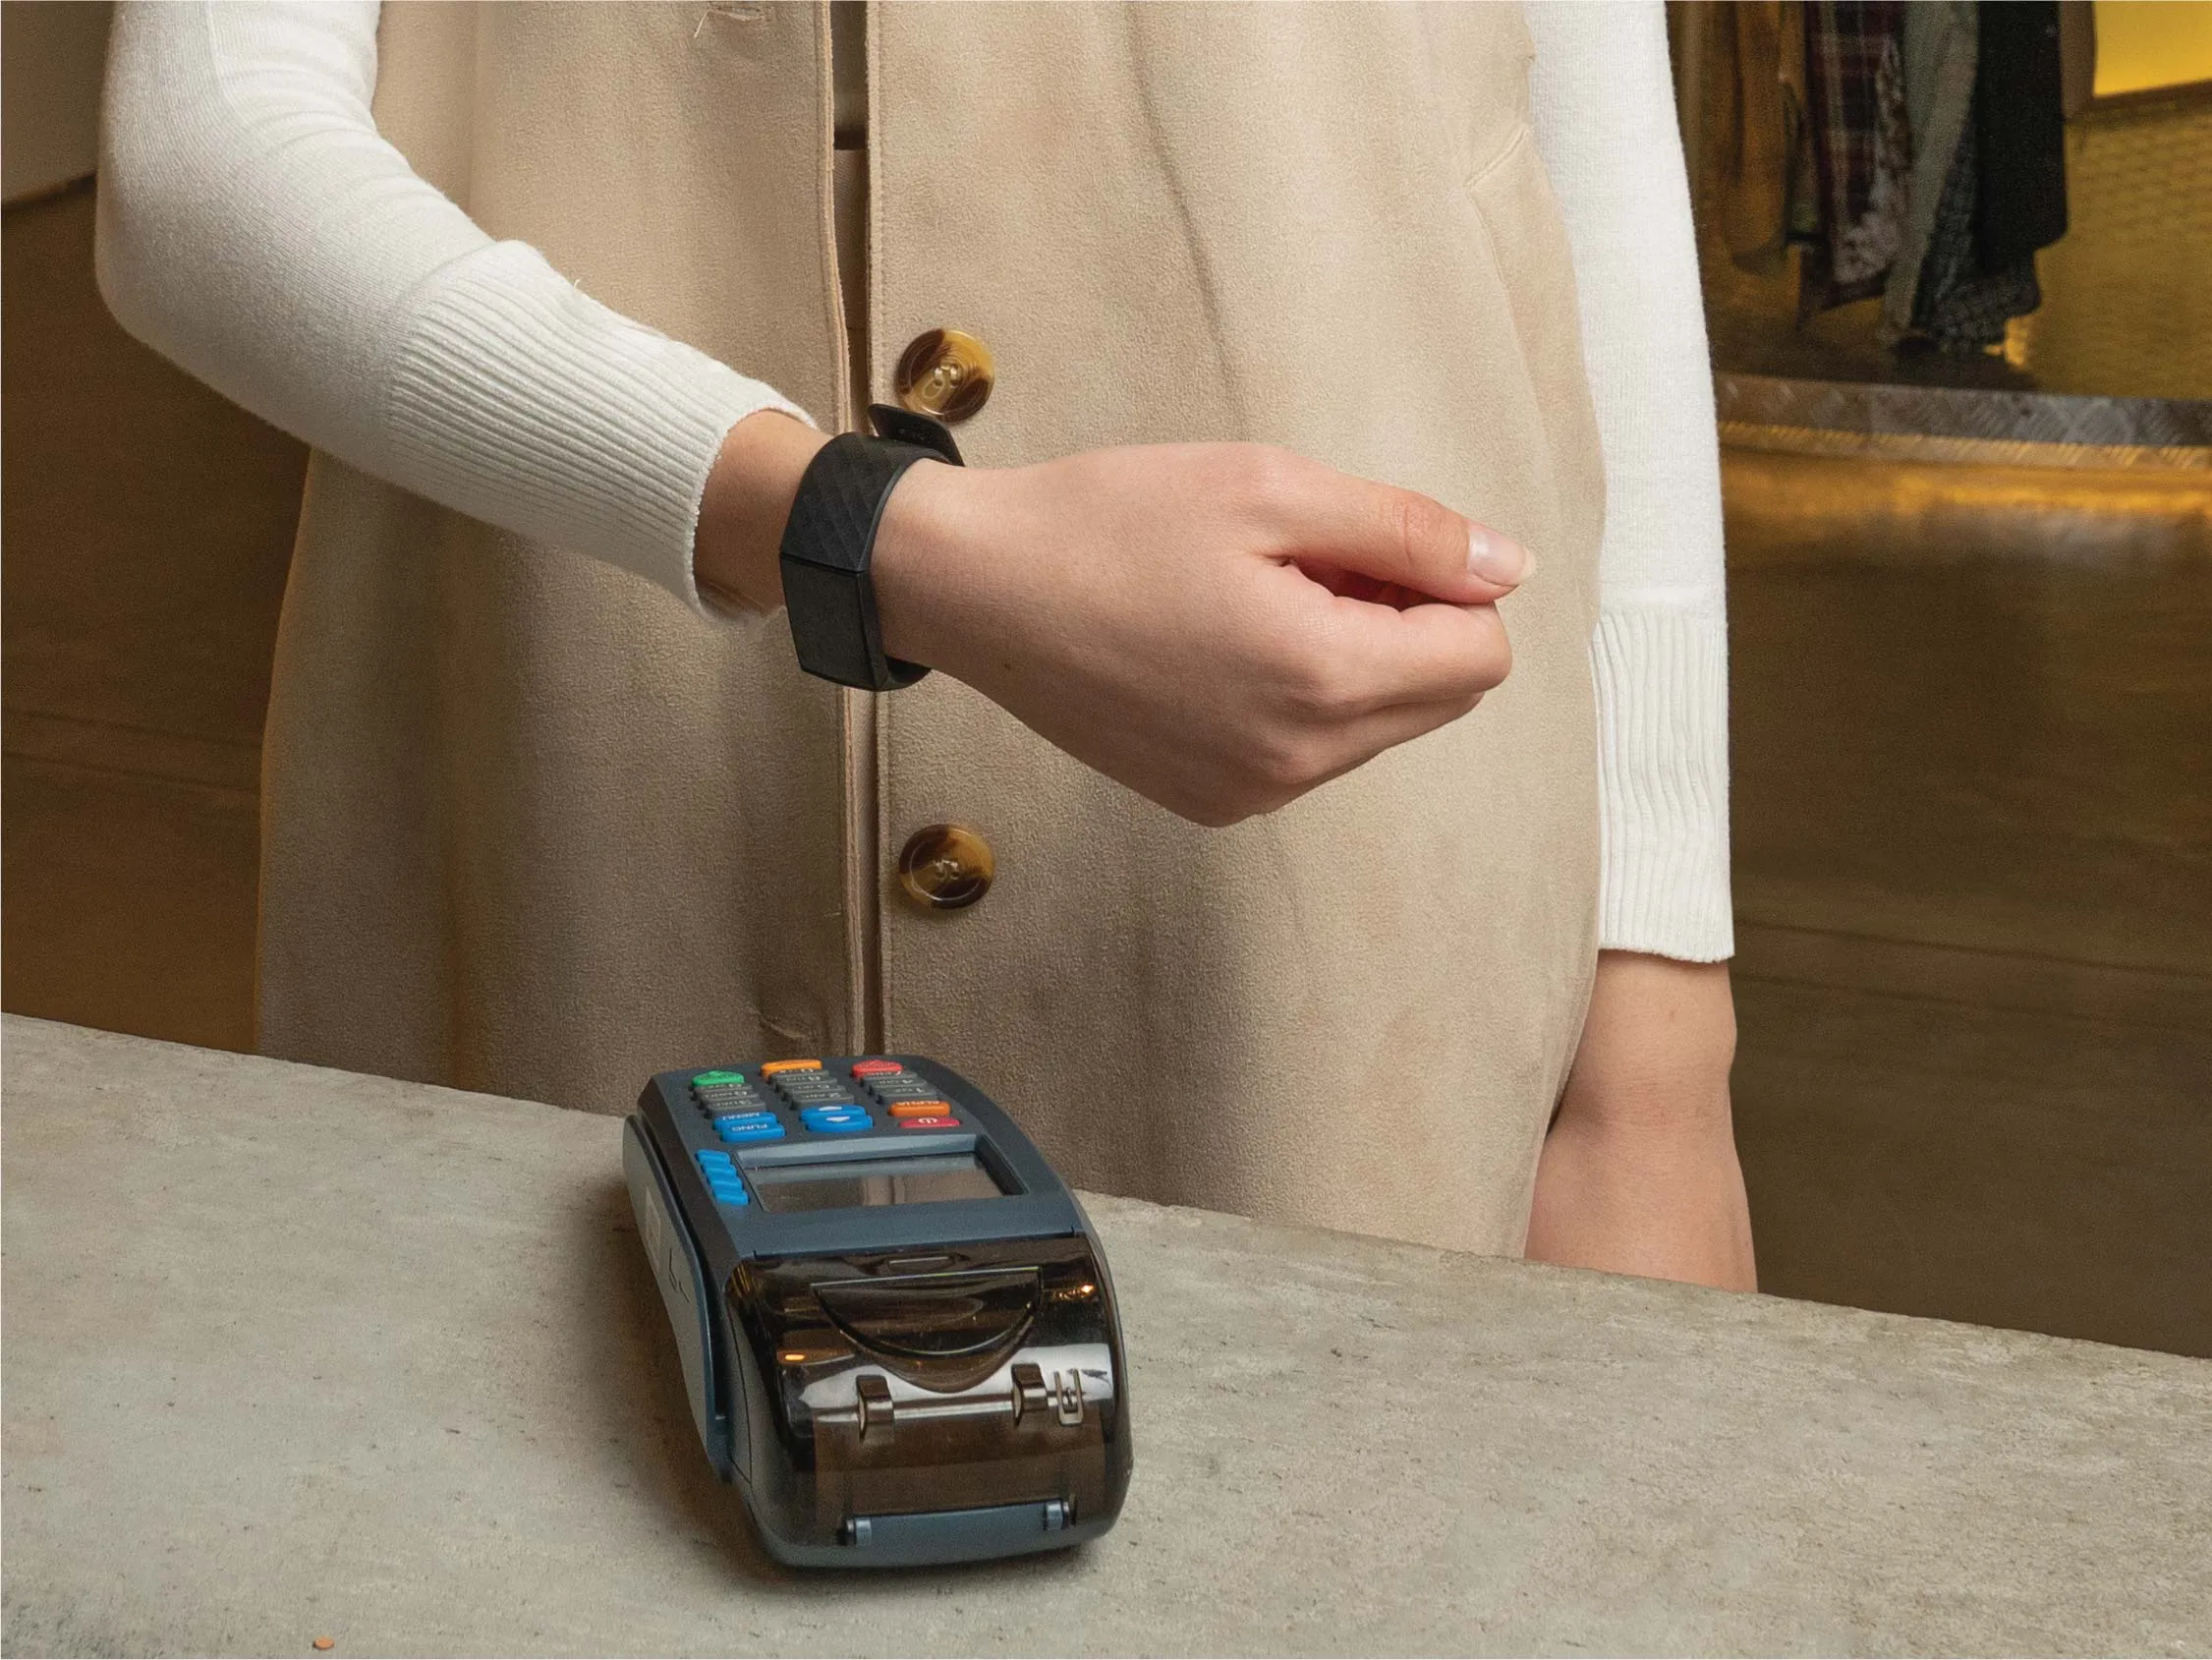 امرأة كويتية تستخدم خدمات Utap بتقنية التواصل قريب المدى NFC على جهاز نقاط البيع من خلال الساعة الذكية